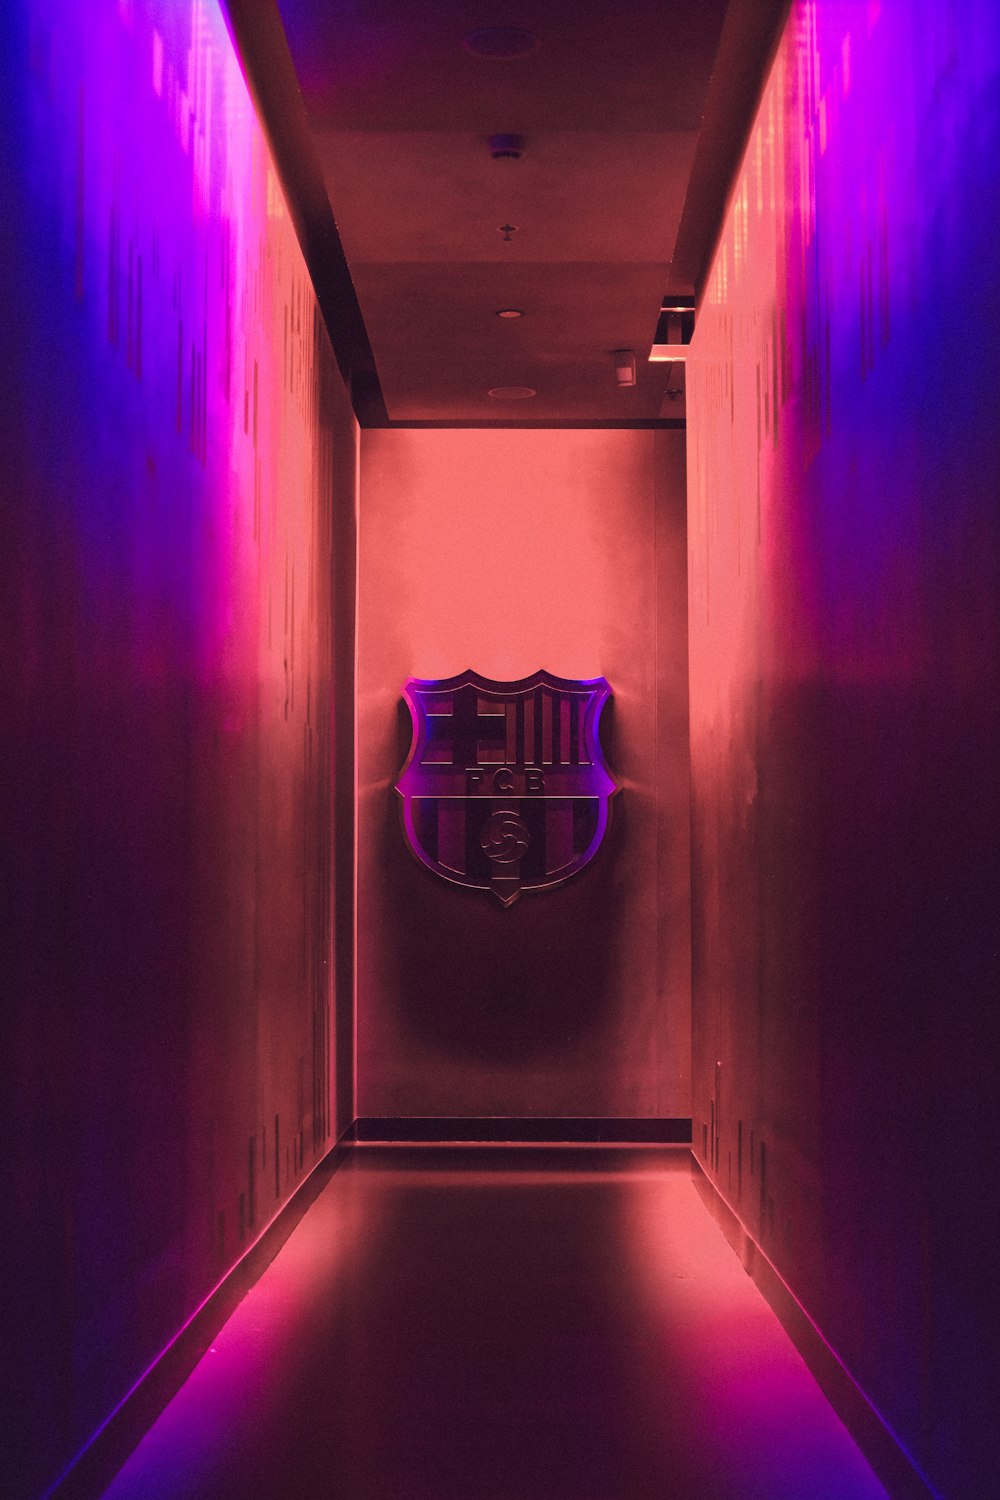 Emblème de football sur le mur